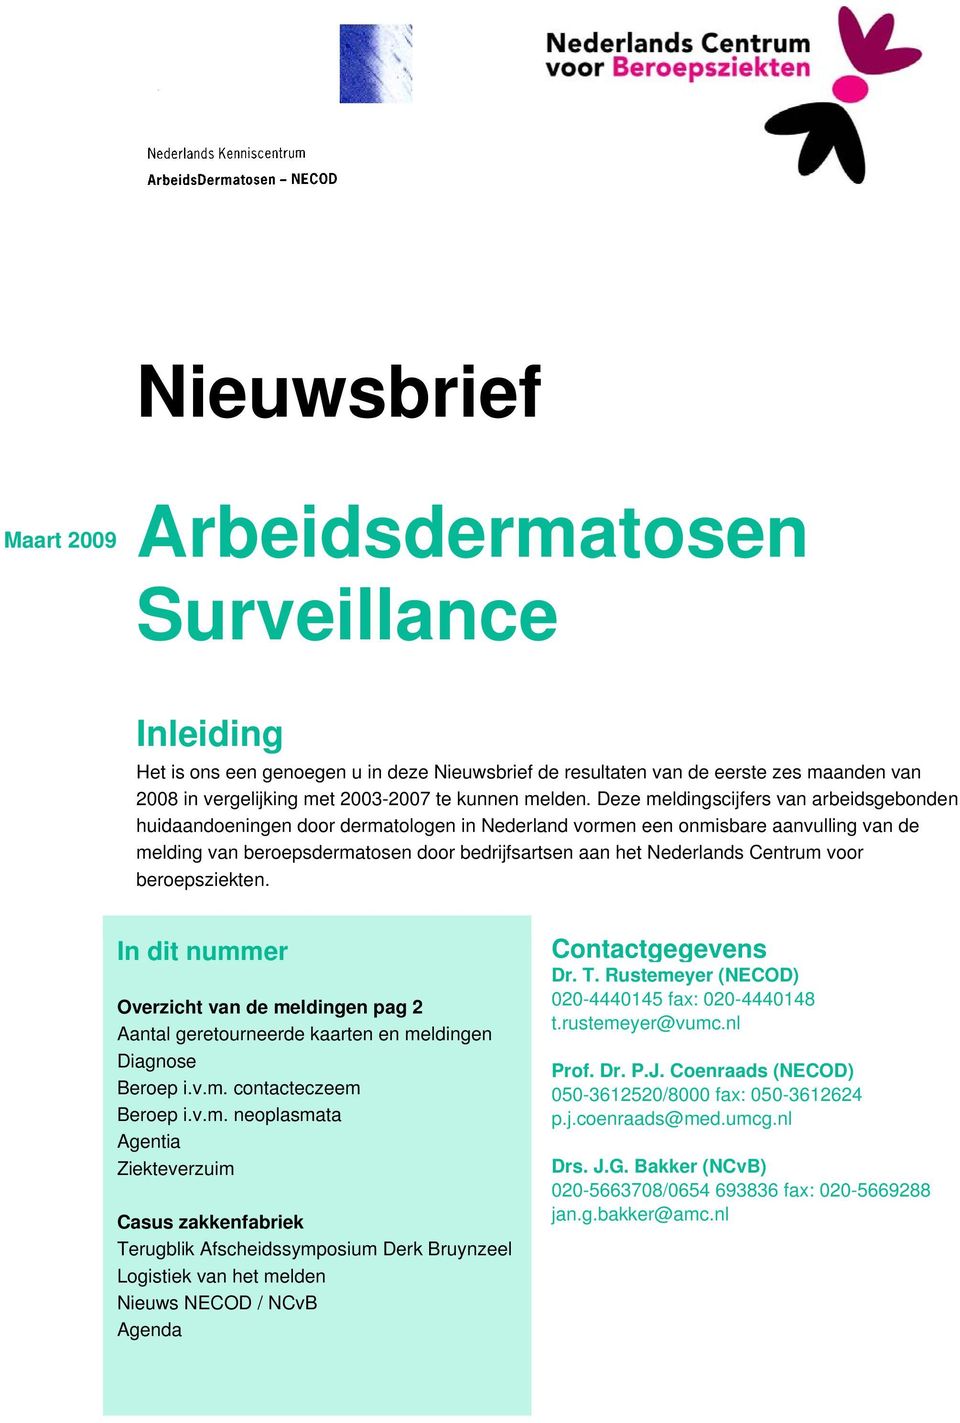 Deze meldingscijfers van arbeidsgebonden huidaandoeningen door dermatologen in Nederland vormen een onmisbare aanvulling van de melding van beroepsdermatosen door bedrijfsartsen aan het Nederlands